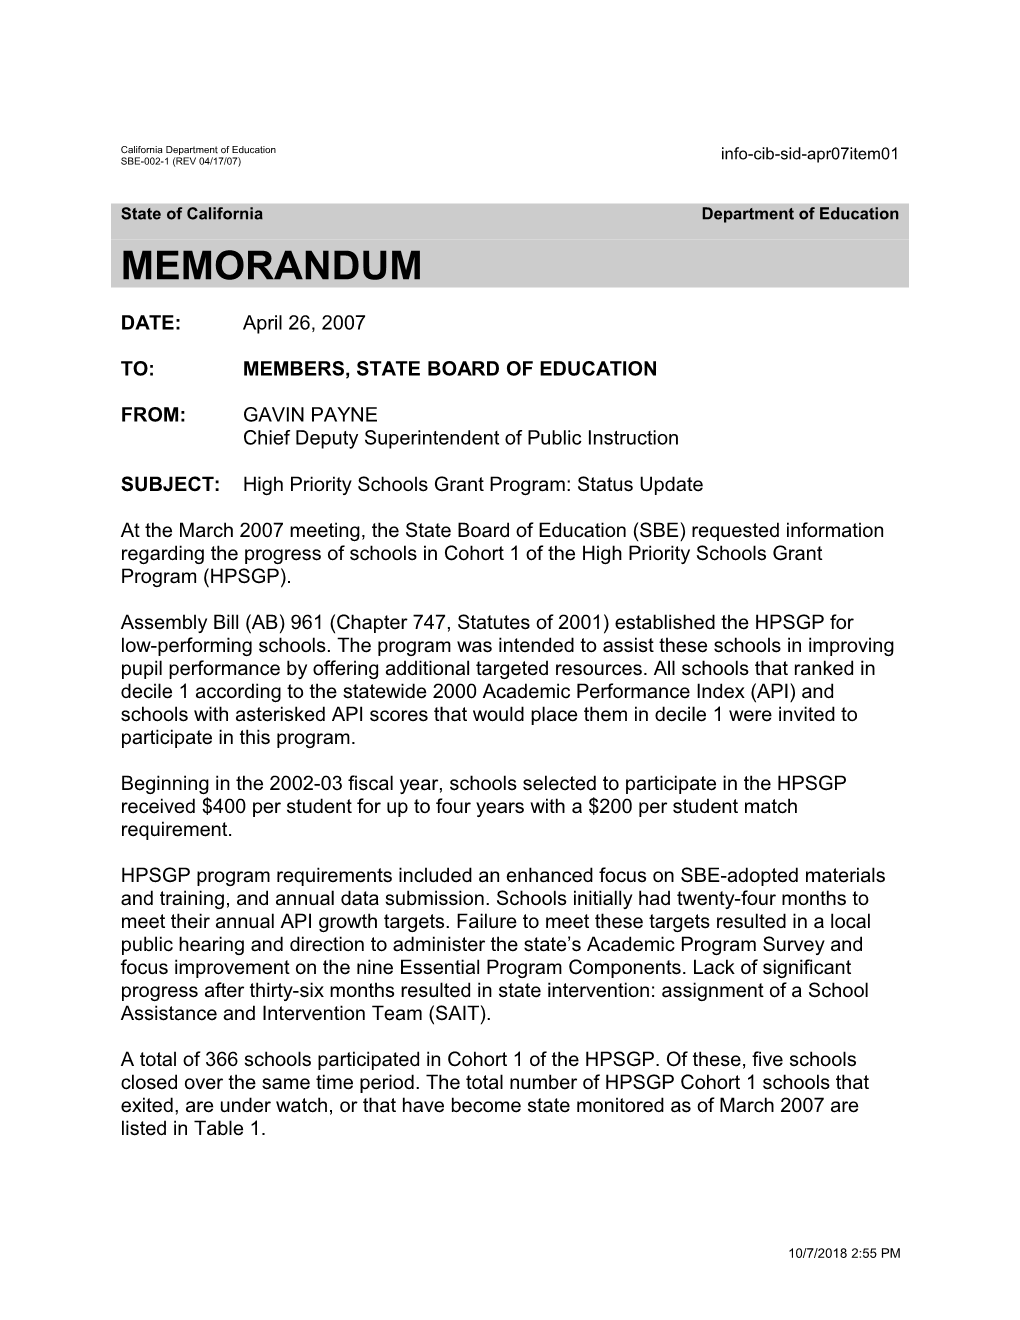 April 2007 Memorandum Item 01 - Information Memorandum (CA State Board of Education)